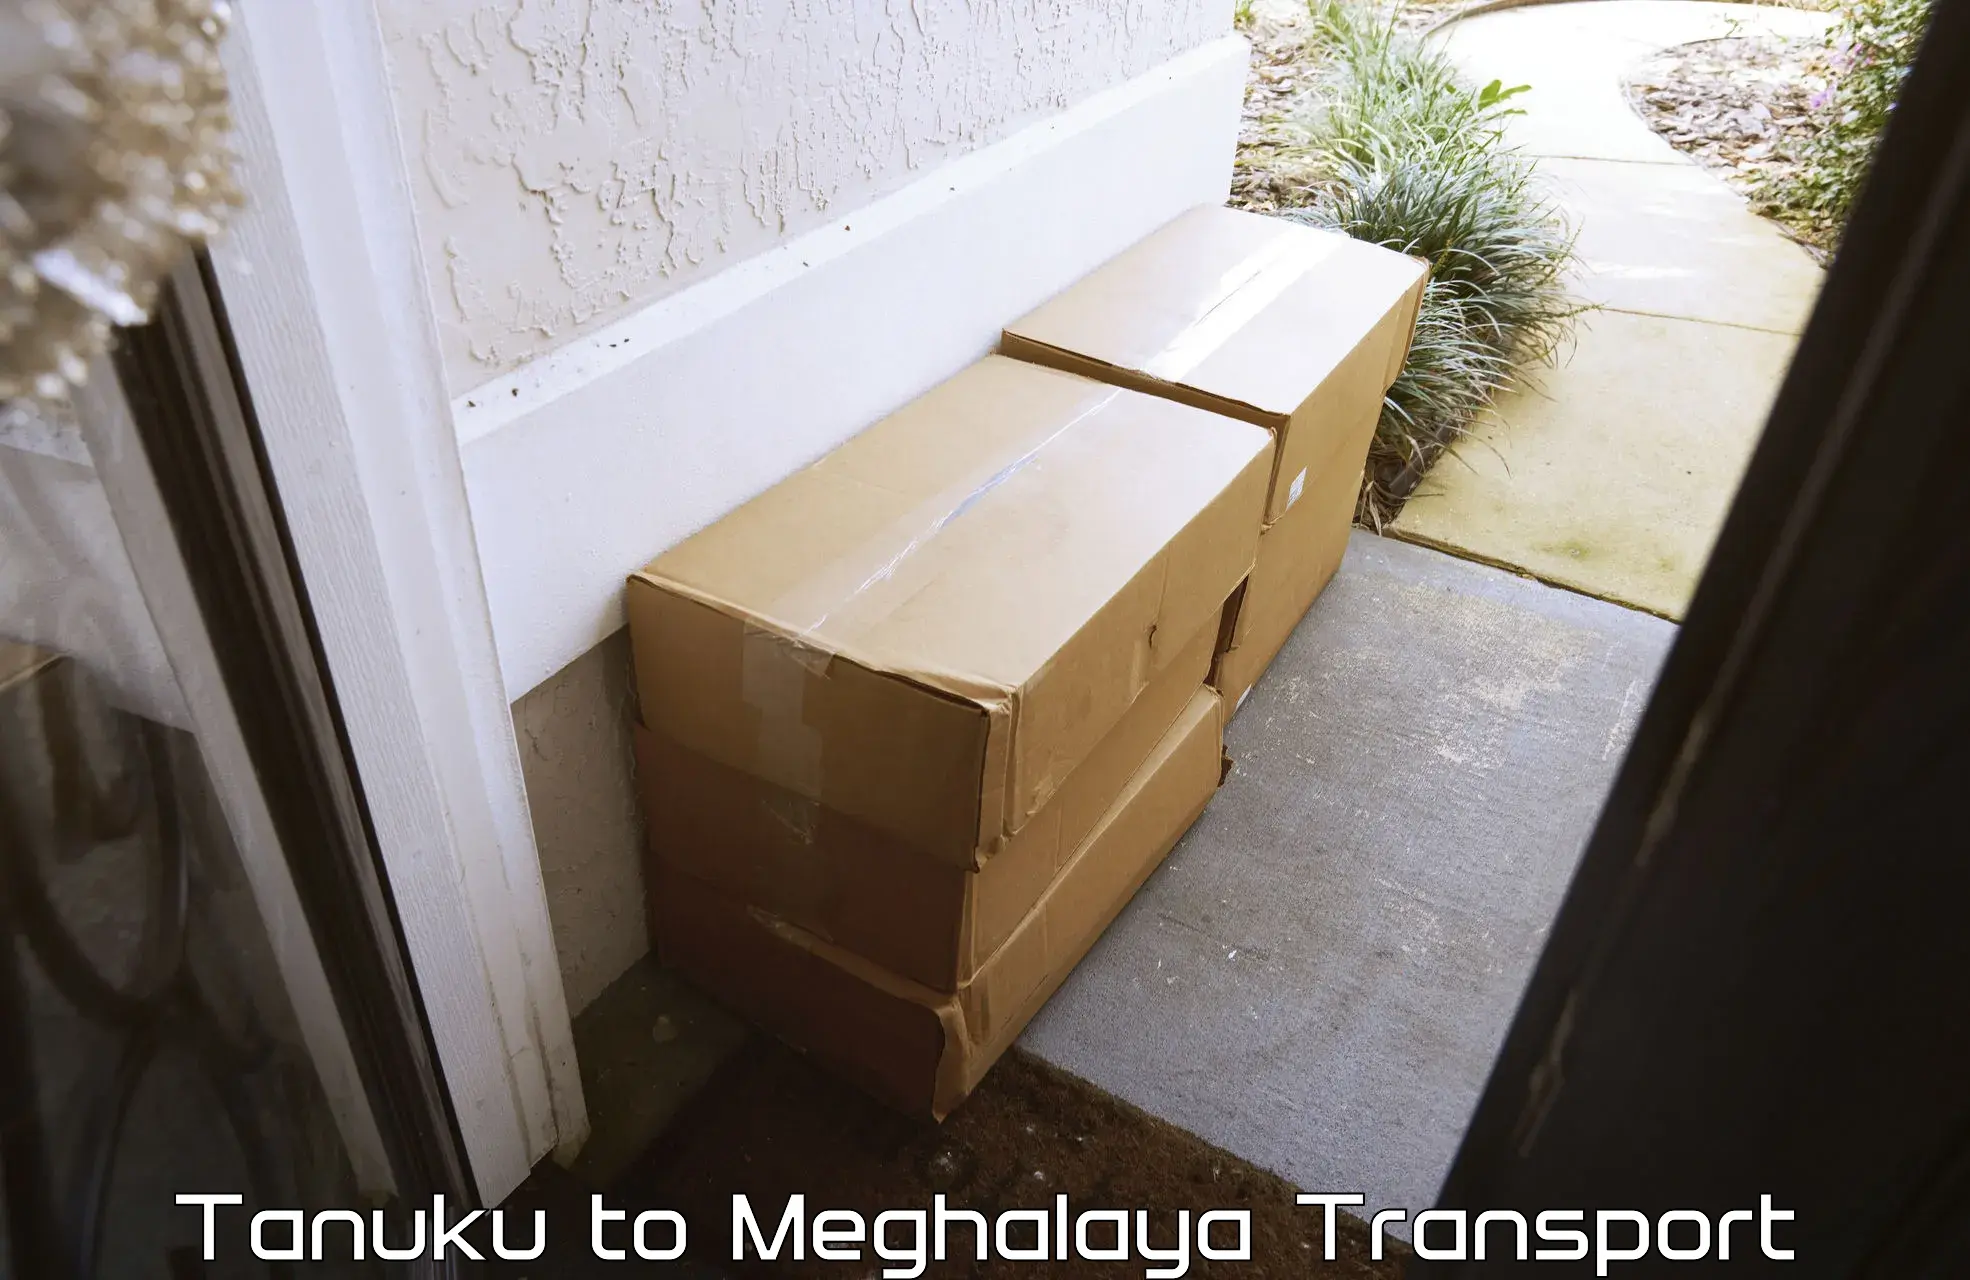 Cargo train transport services in Tanuku to NIT Meghalaya